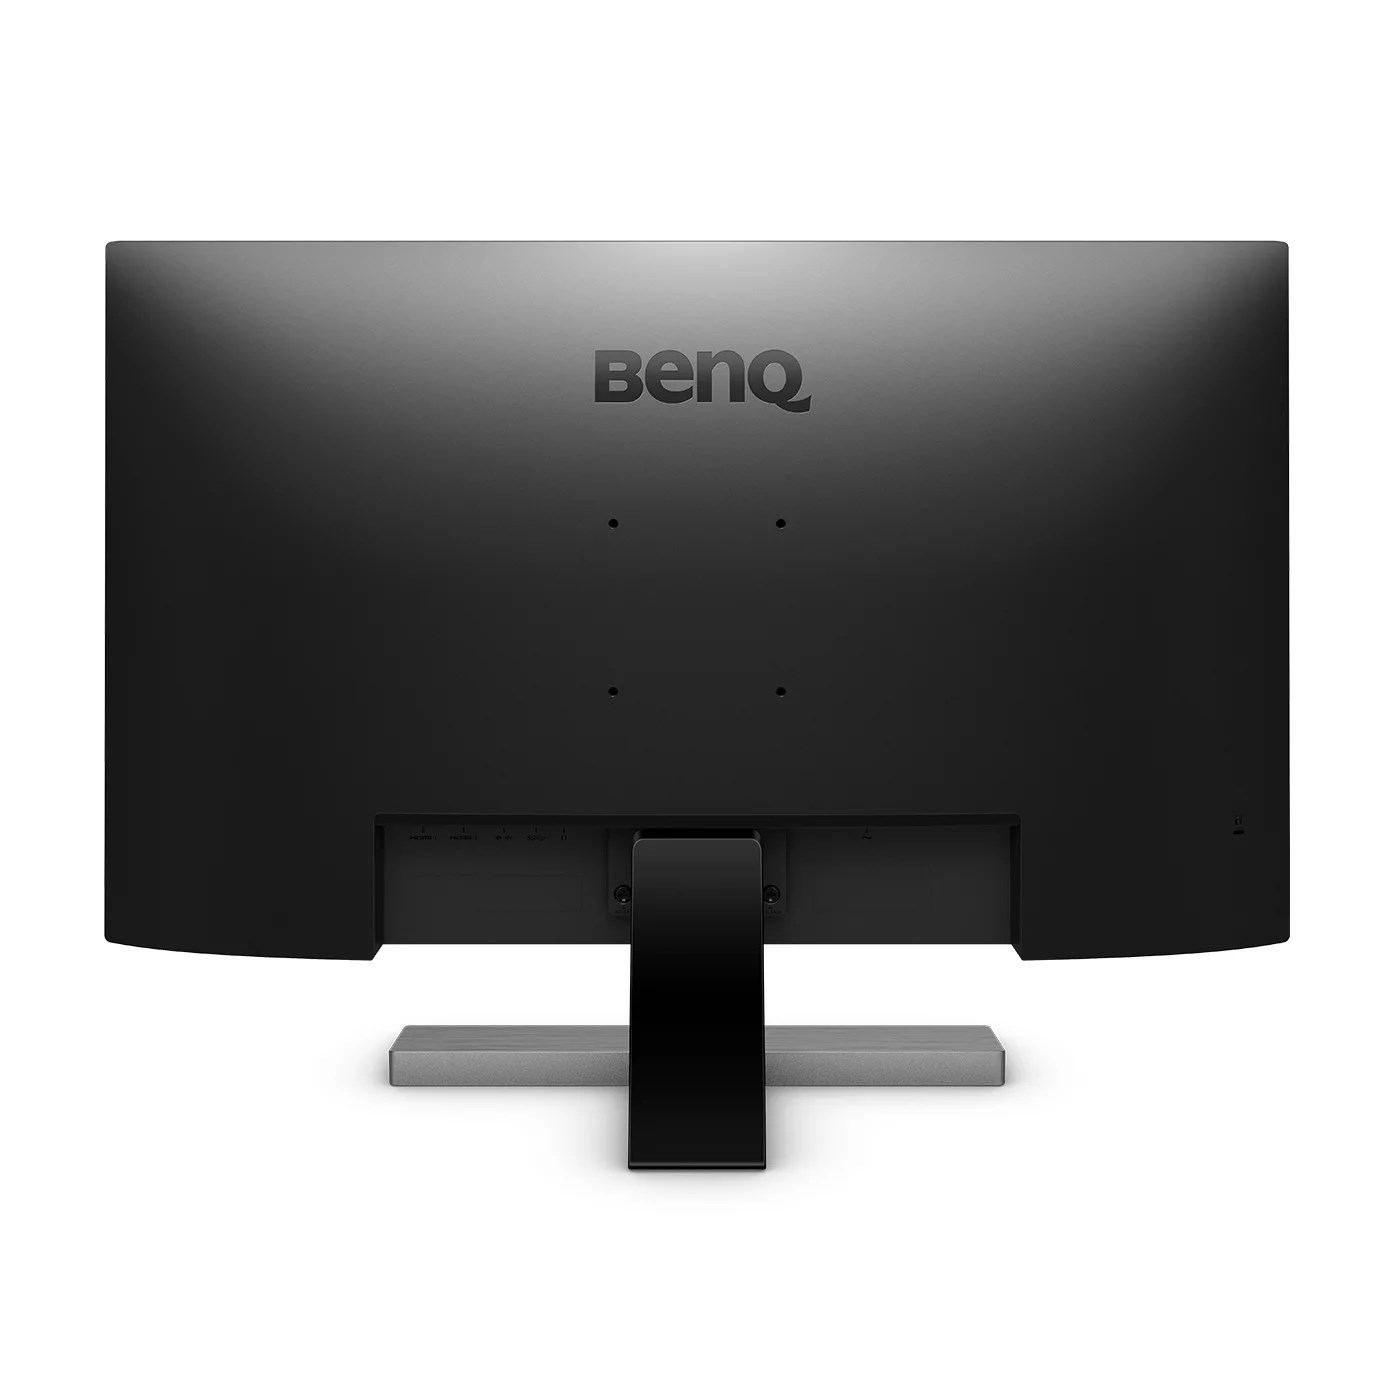 BENQ MT LCD LED 32